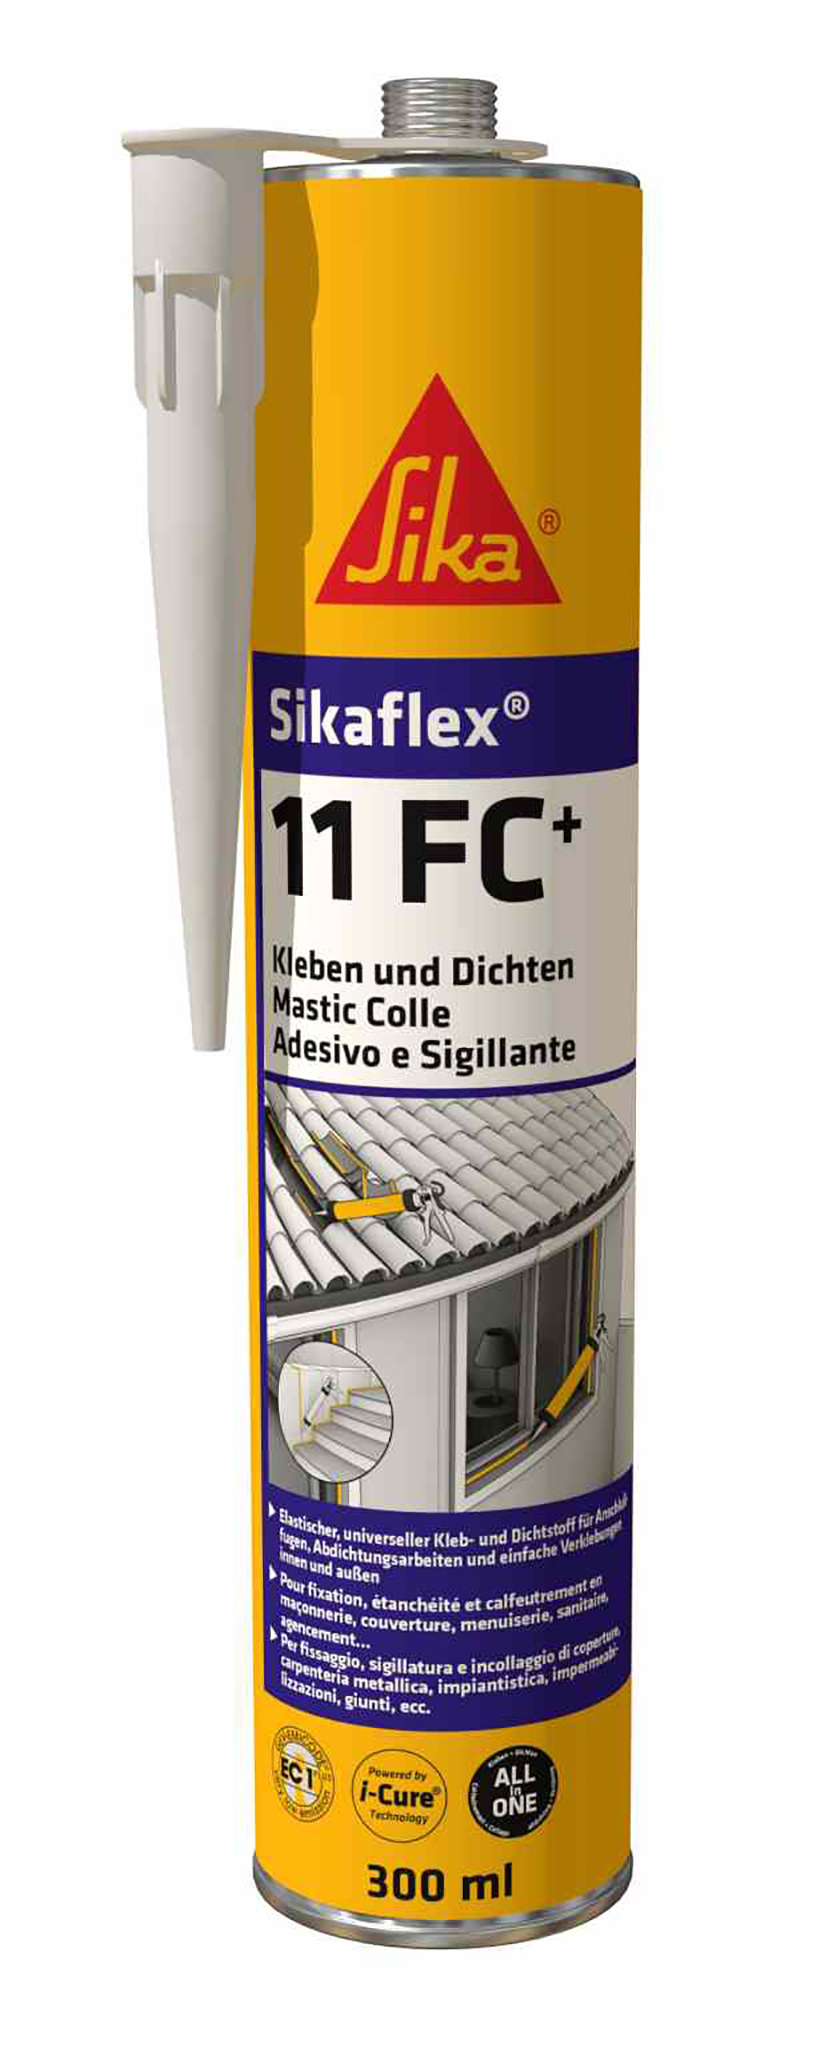 Sikaflex 11 FC+ universell elastisch Kleben und Dichten Kartusche 300ml